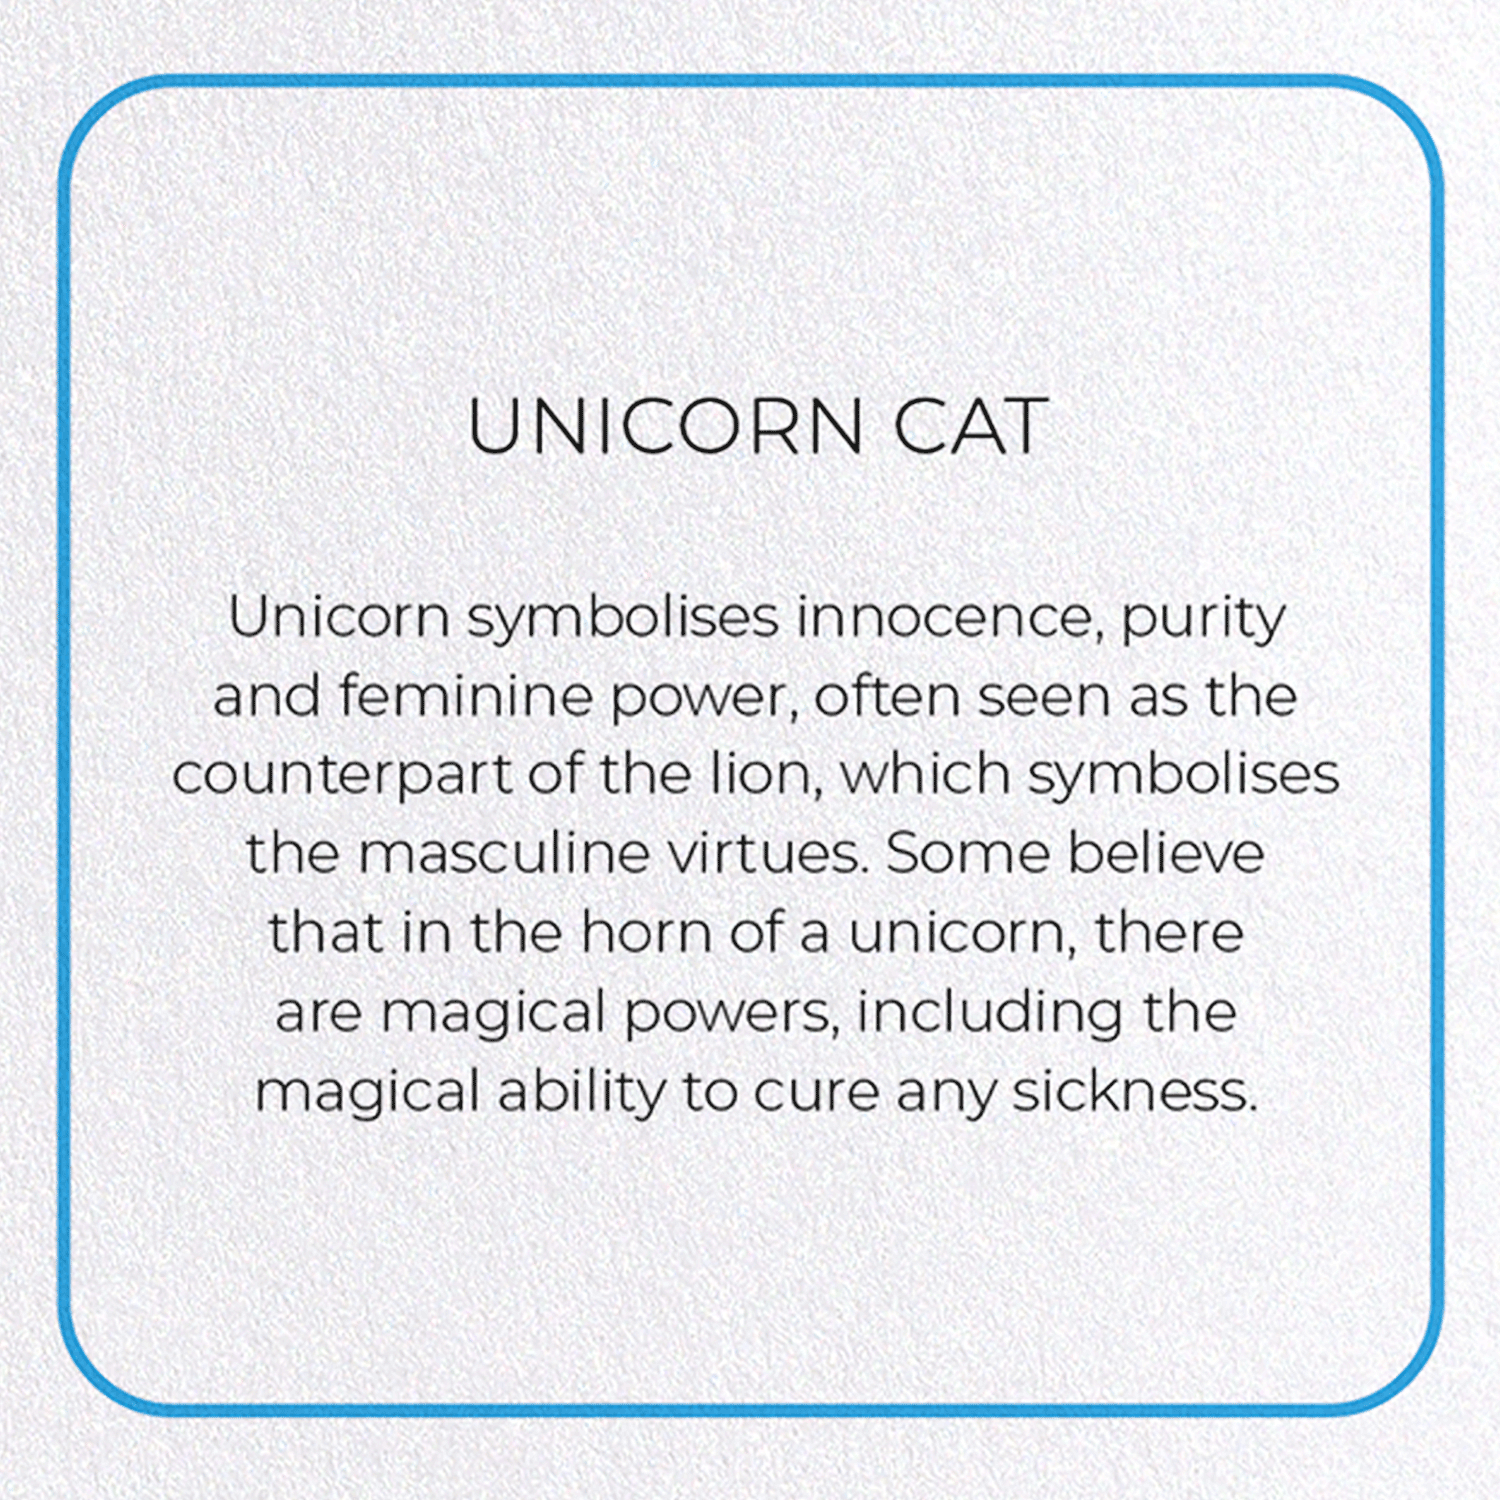 UNICORN CAT